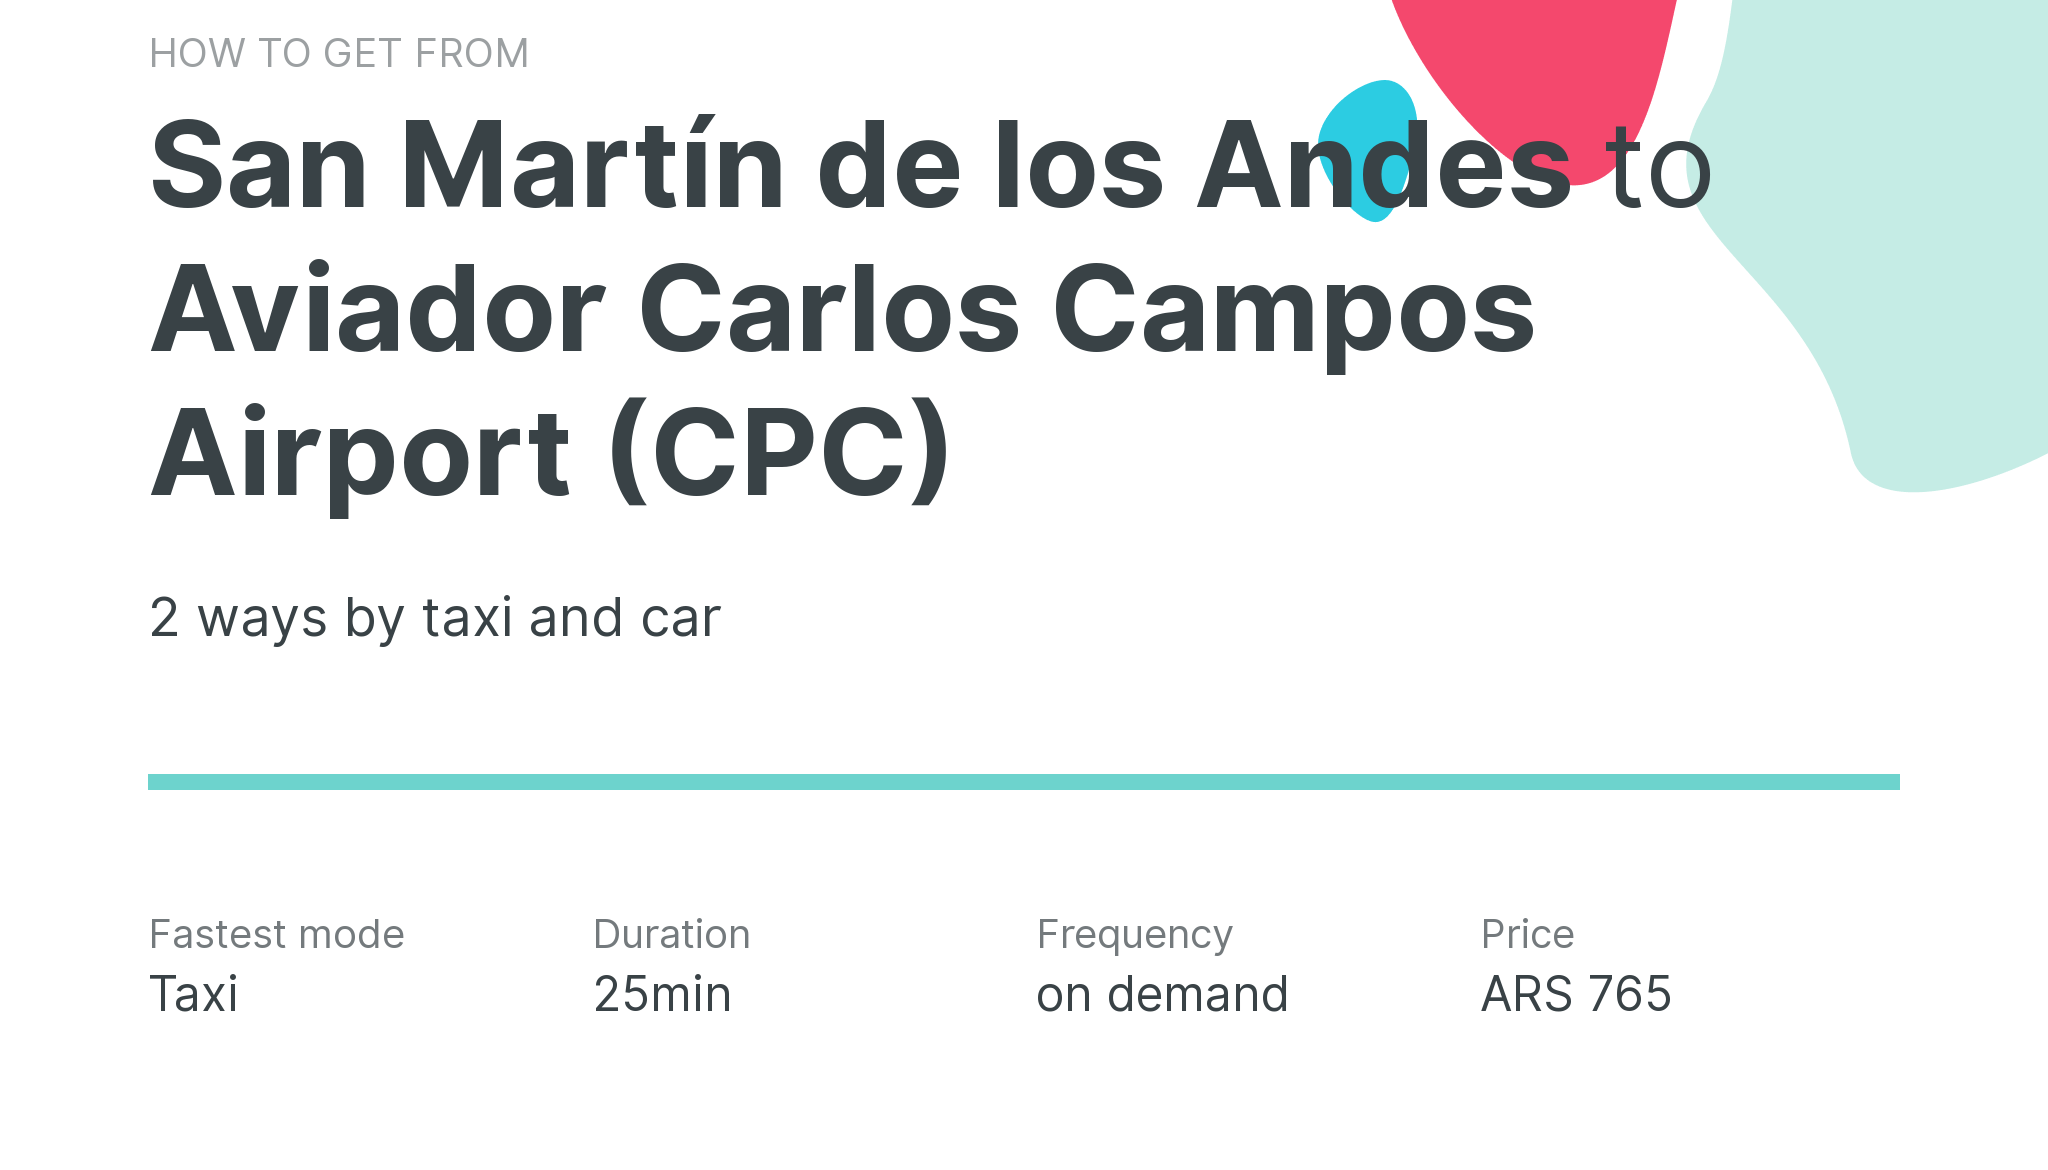 How do I get from San Martín de los Andes to Aviador Carlos Campos Airport (CPC)